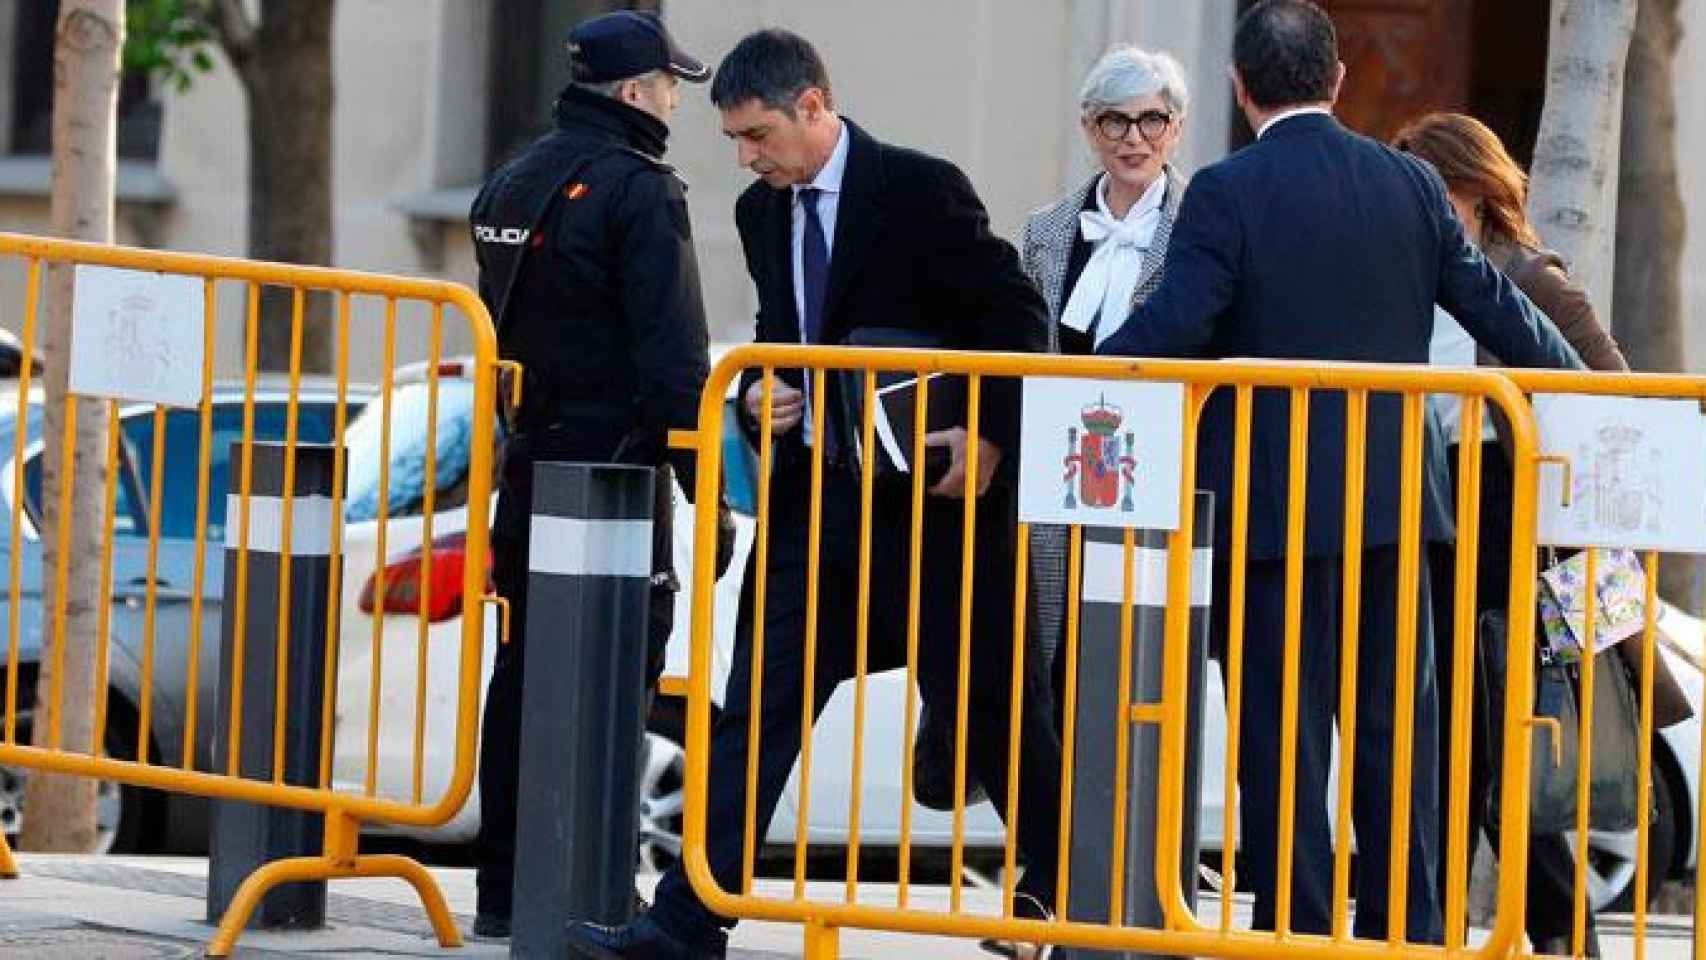 Josep Lluís Trapero, exmayor de los Mossos d'Esquadra, llegando al Tribunal Supremo acompañado de su abogada, Olga Tubau / EFE